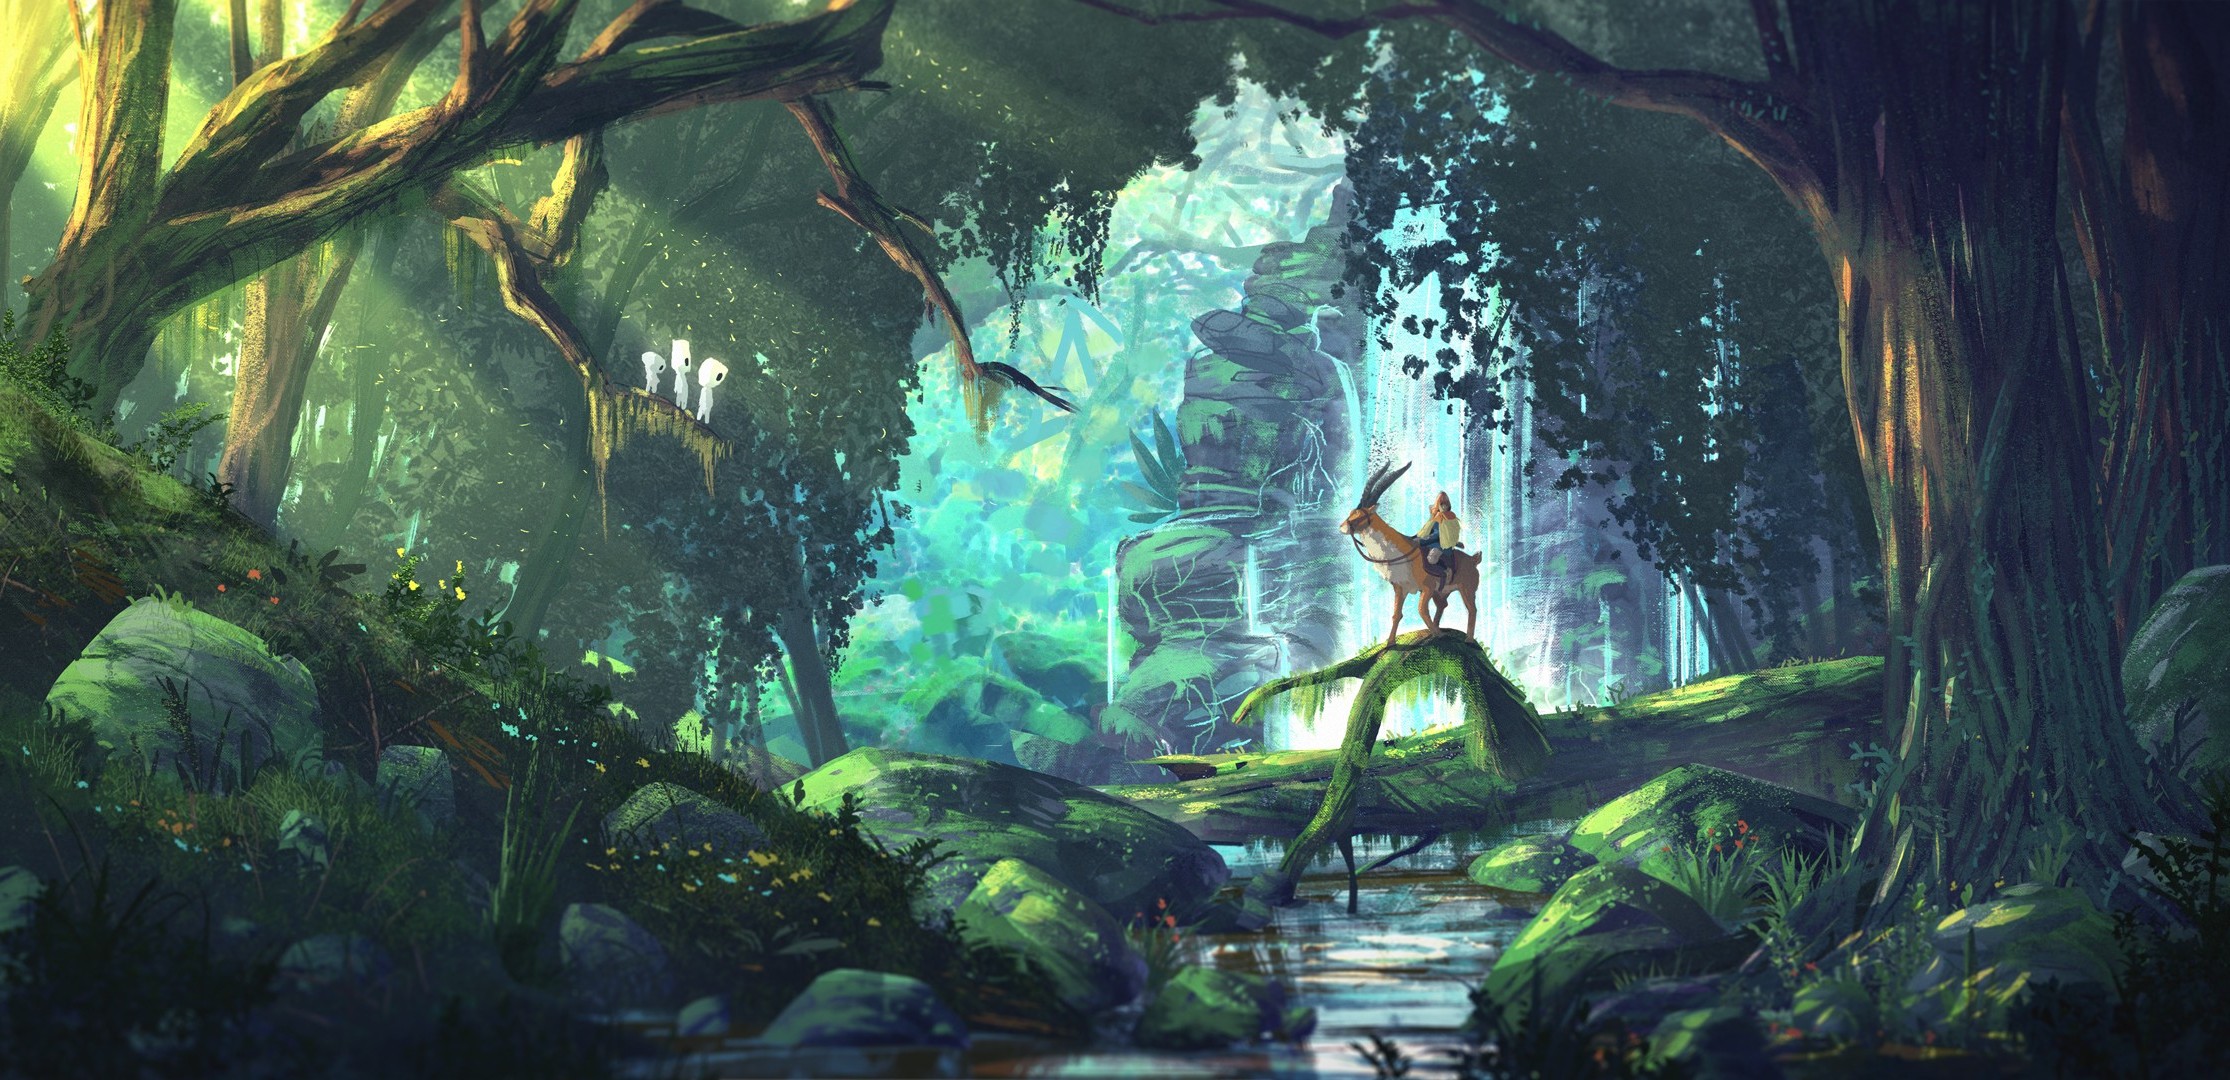 Fantasy Art Anime Forest Princess Mononoke Studio Ghibli